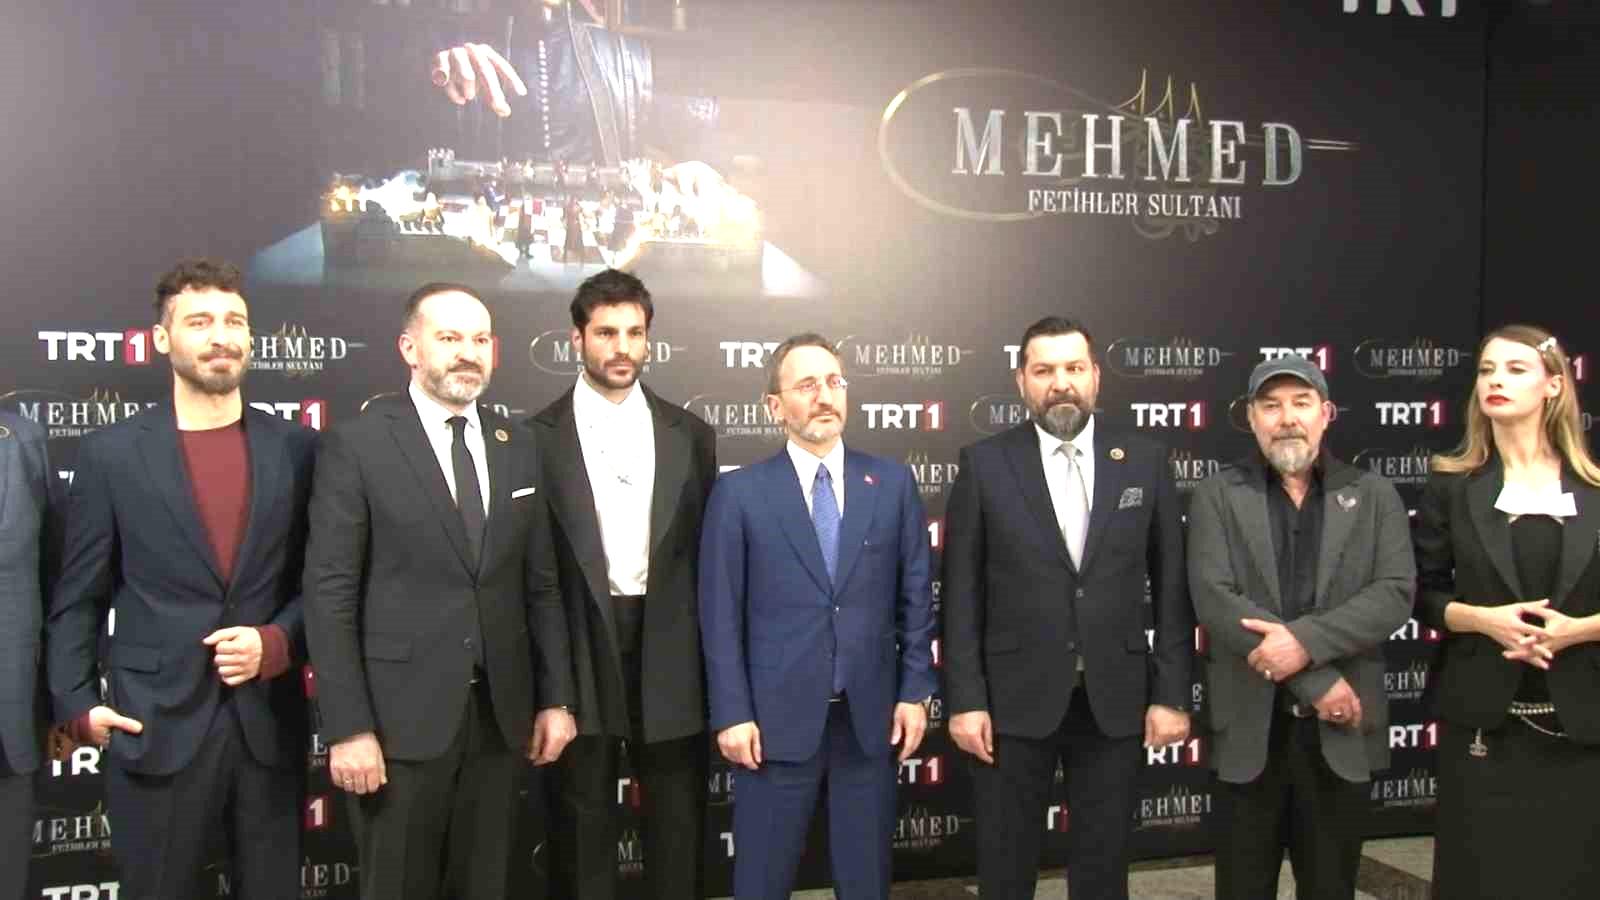 TRT’nin yeni dizisi ’Mehmed: Fetihler Sultanı’nın galası yapıldı